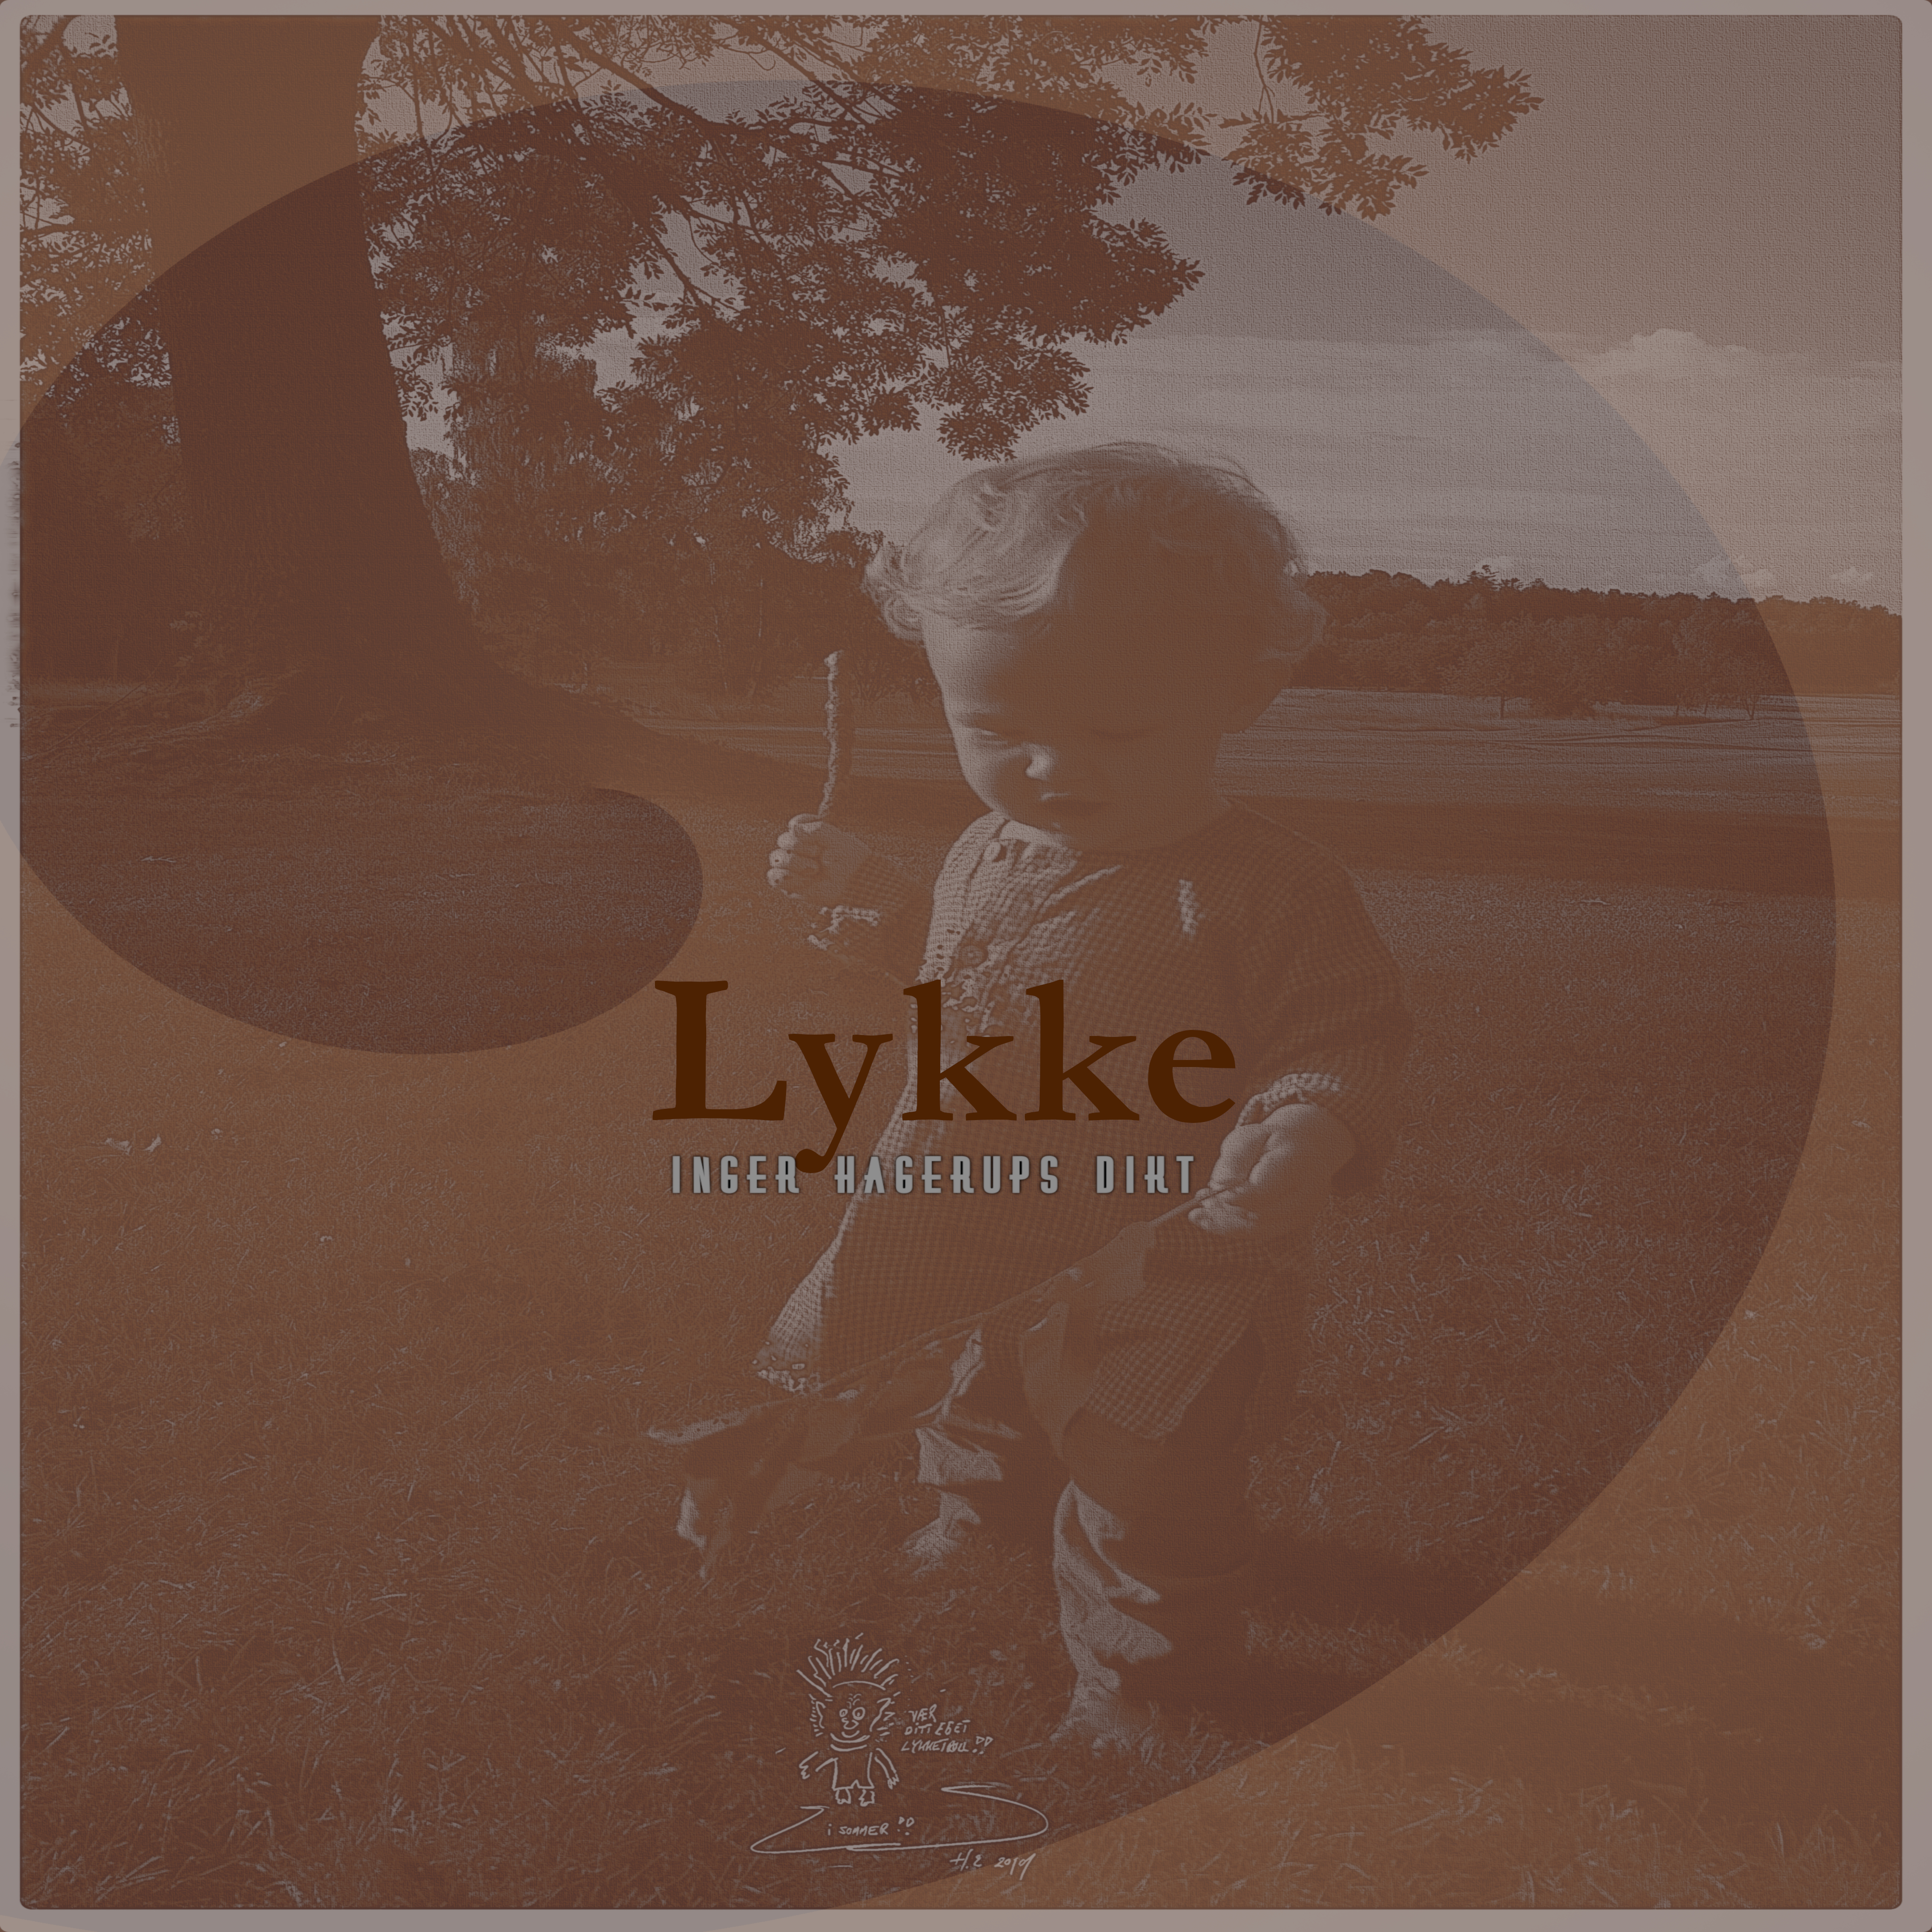 Bilde av cover til singelen Lykke. Design ved Henriette Nilsson